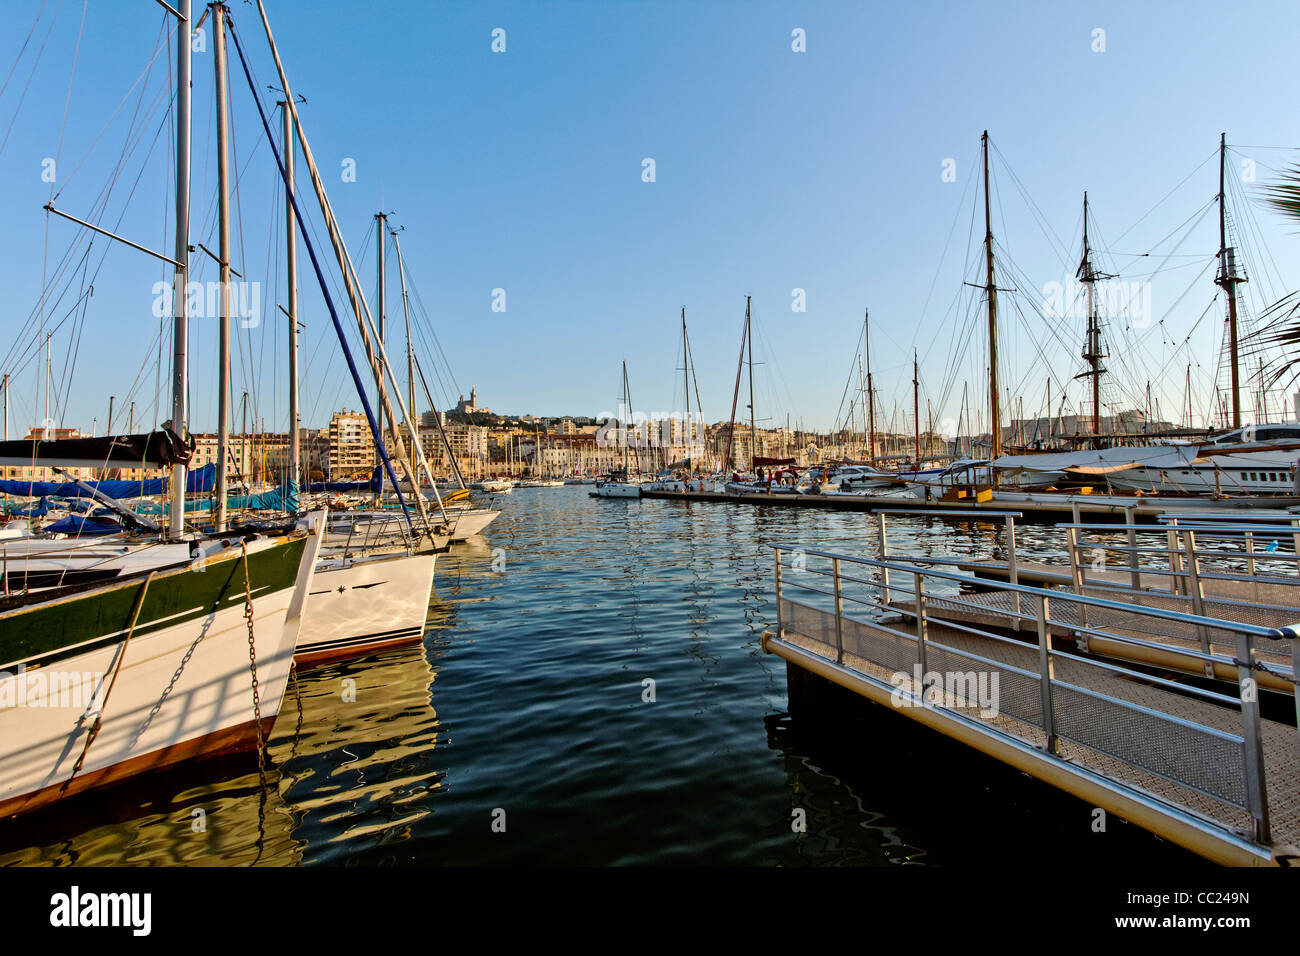 The Old Harbour, Vieux Port, Marseille, Marseilles, Provence-Alpes-Côte d'Azur, France, Europe Stock Photo